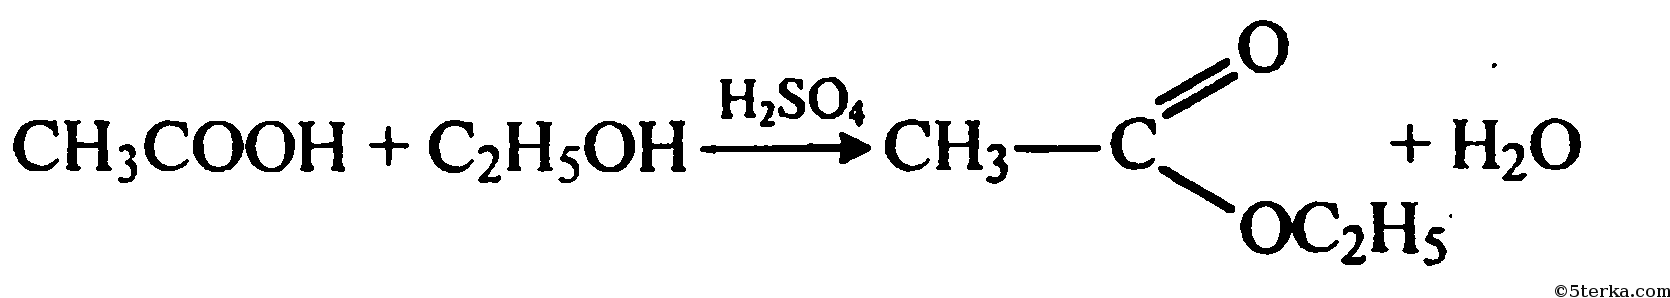 Этилен этиловый эфир. Окисление метанола на Медном катализаторе. Уксусный альдегид и гидроксид меди 2. Уксусный альдегид плюс гидроксид меди 2.